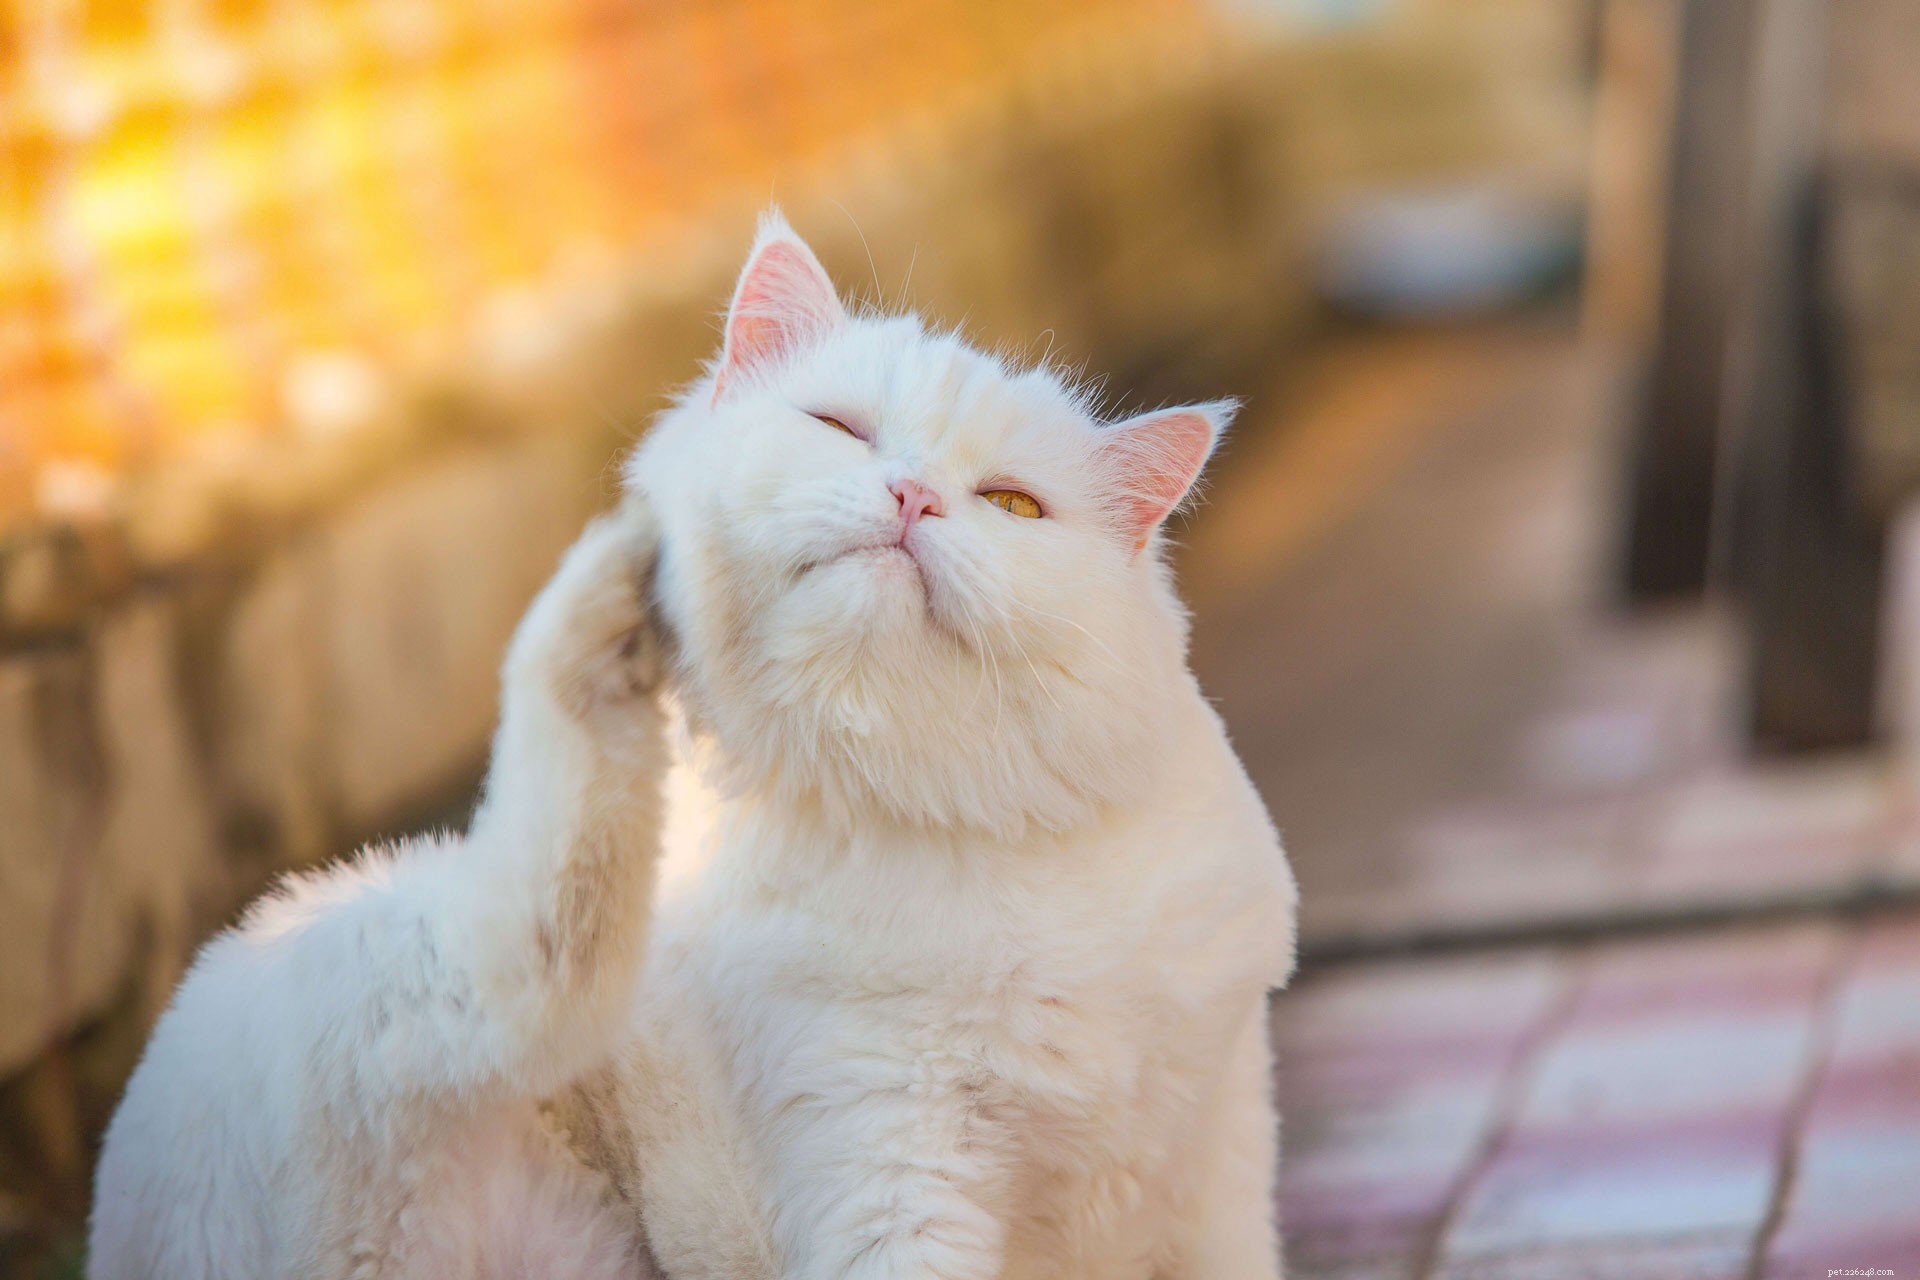 Eenvoudige huismiddeltjes voor de behandeling van oormijt bij katten